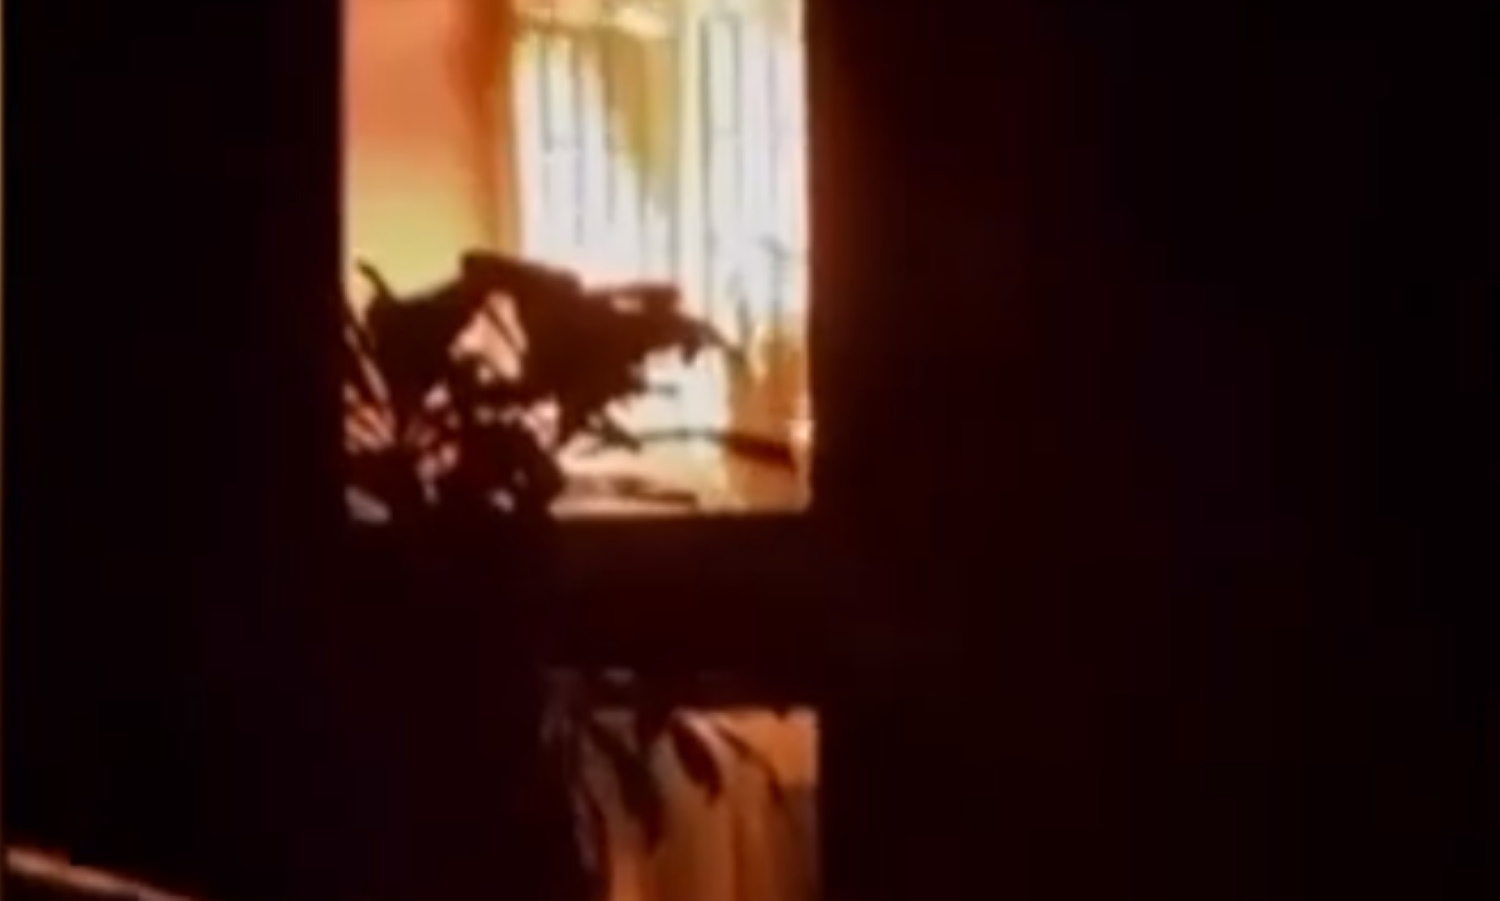 Σανγκάη: Φωτιά σε πολυκατοικία προκάλεσε πανικό – Το lockdown καθυστέρησε την πυροσβεστική